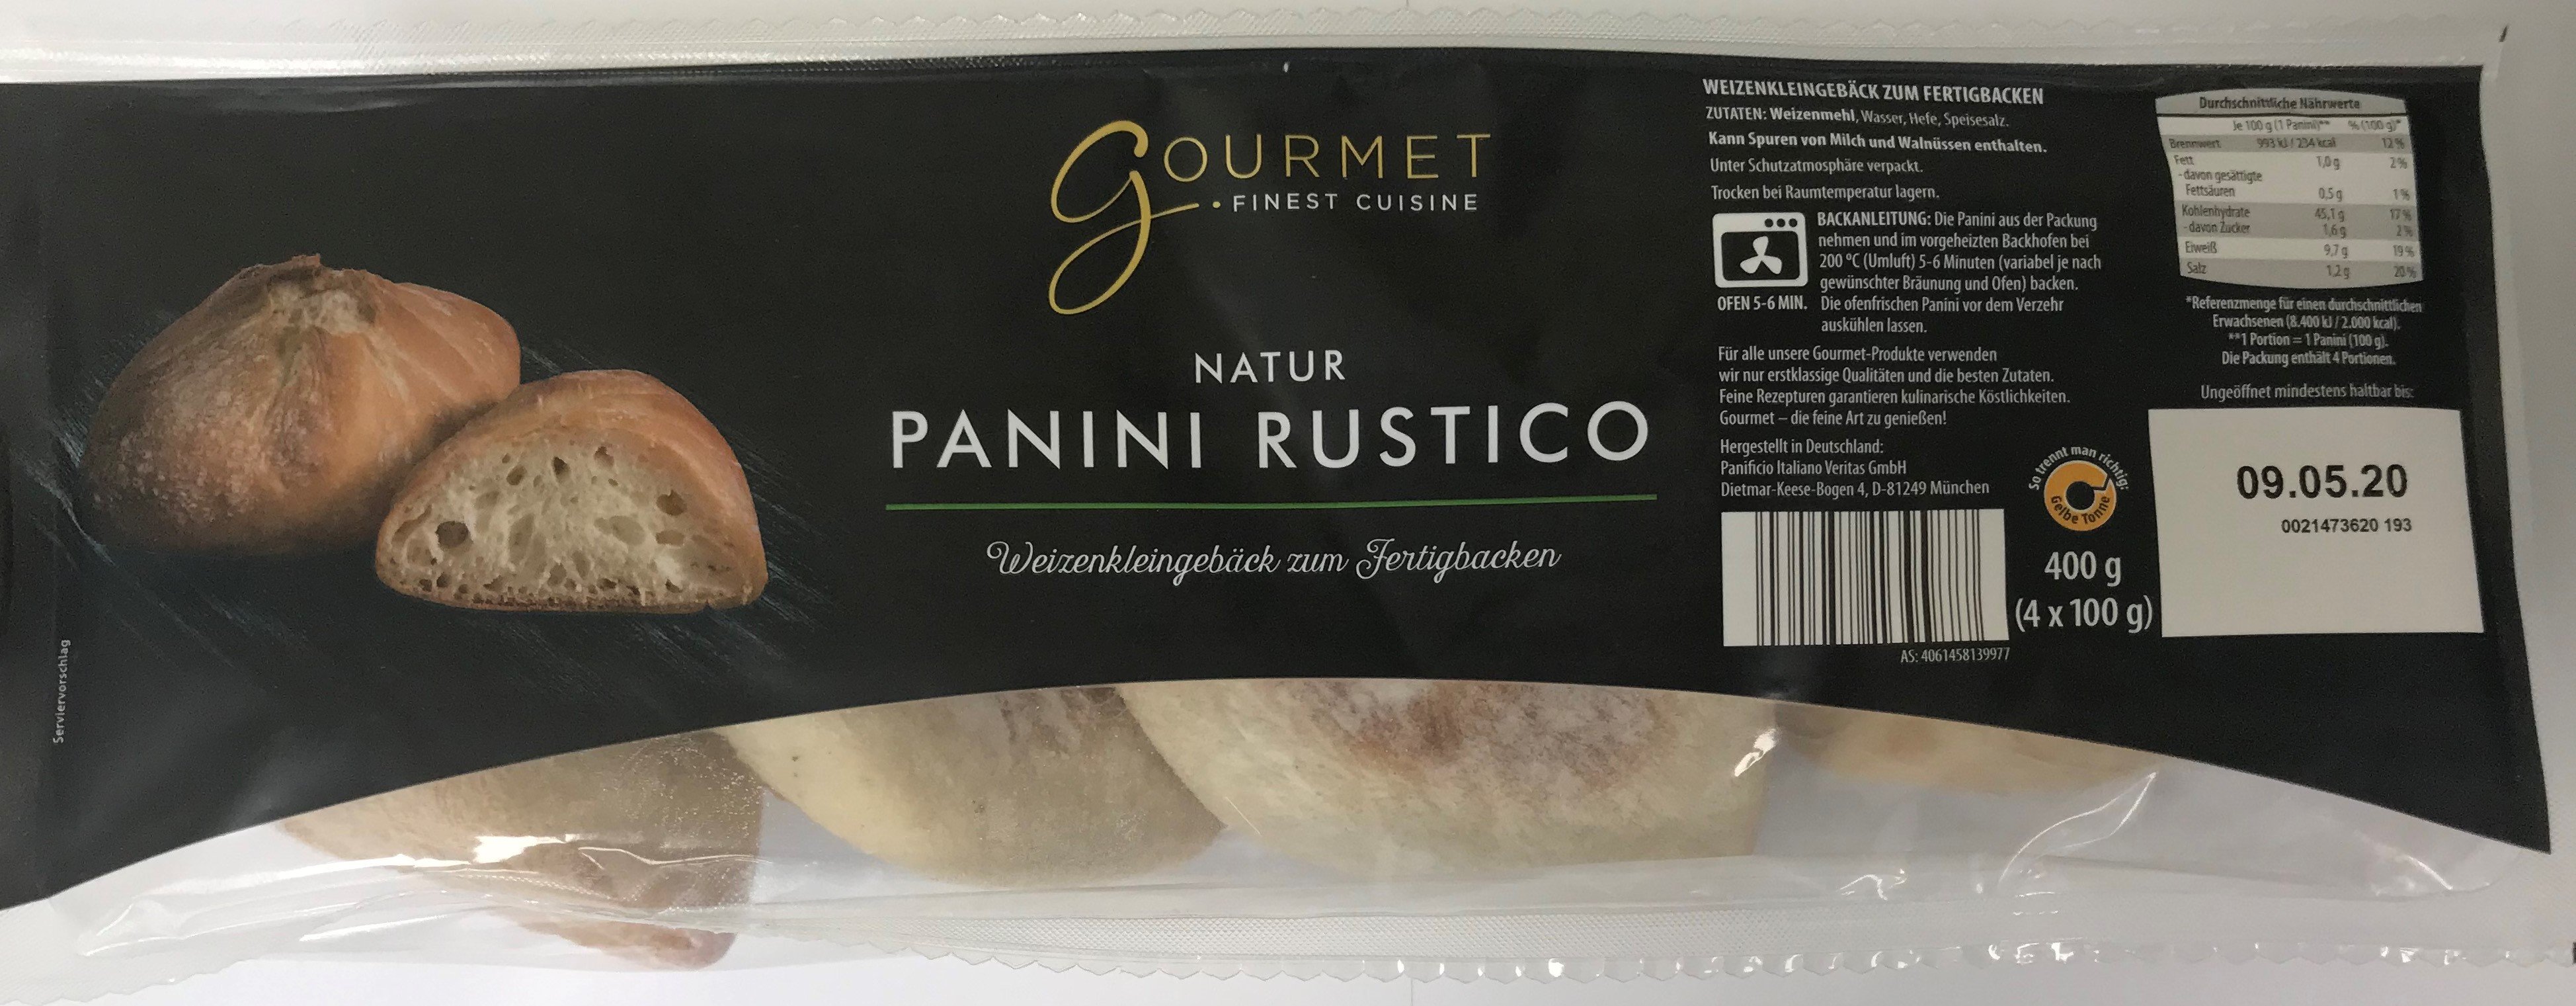 Produktrückruf "Panini Rustico, Sorte Natur"